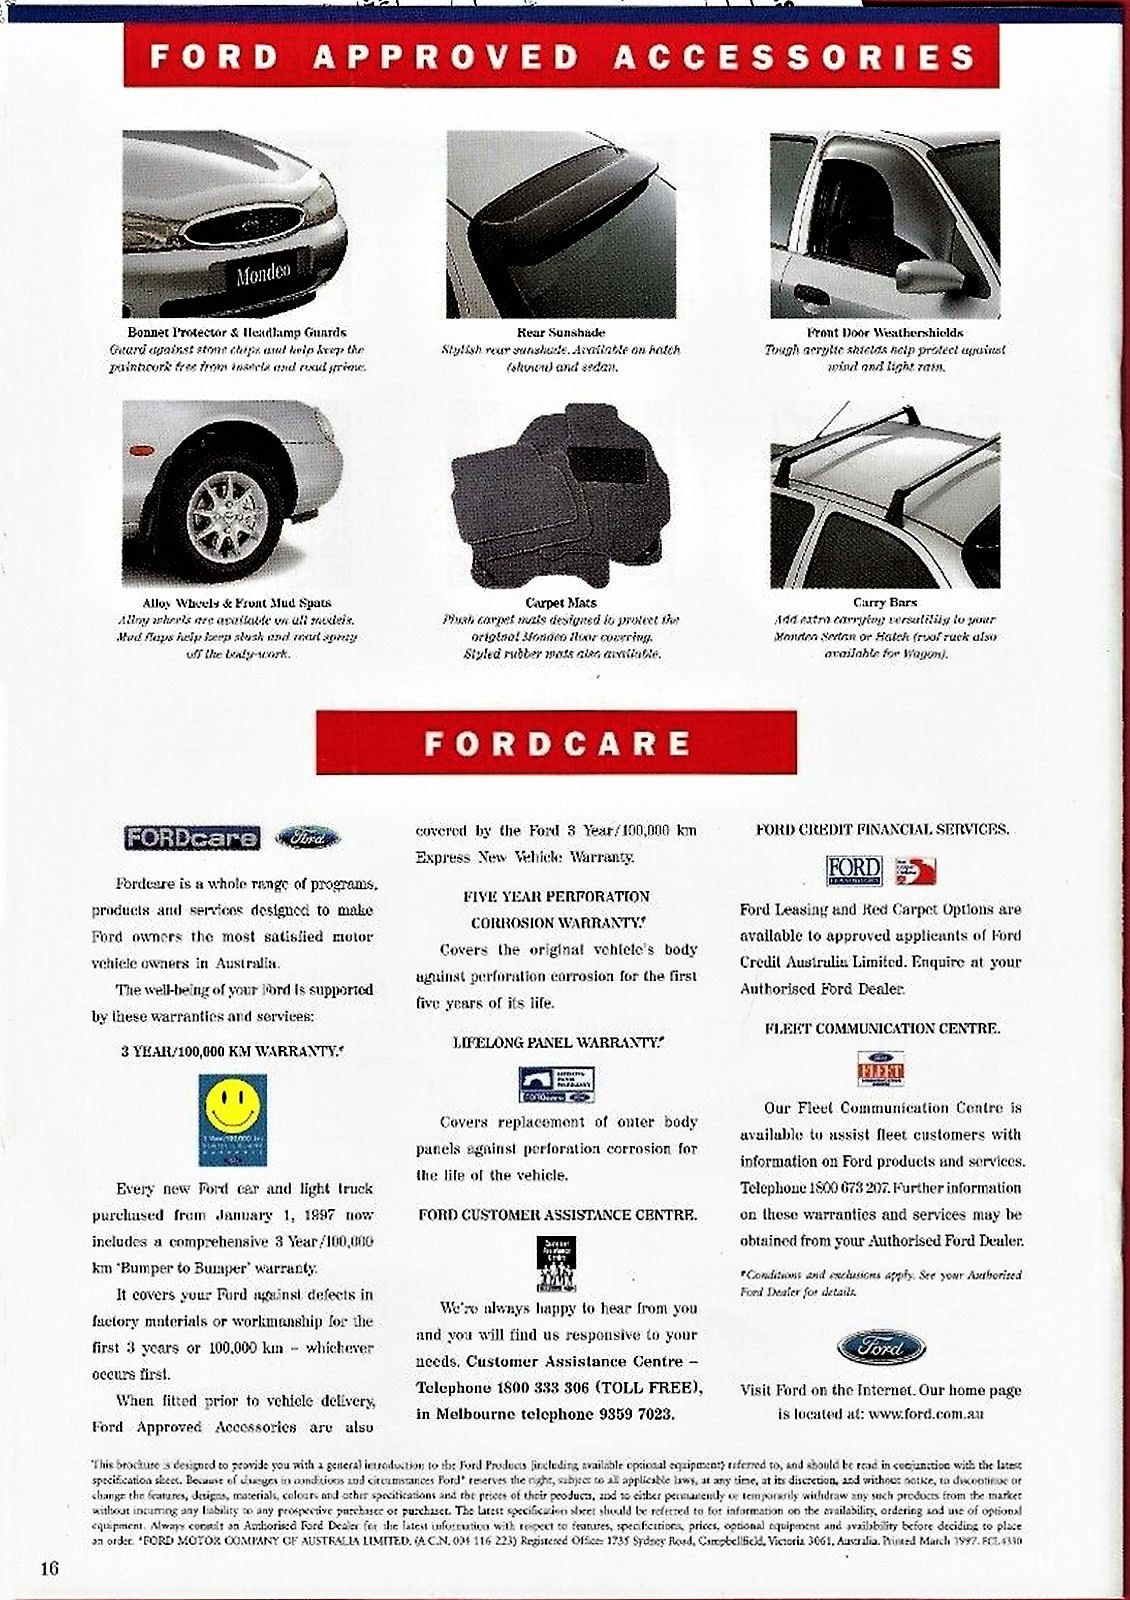 1997 Ford Mondeo (Aus).pdf-2023-11-16 21.51.30_Page_10